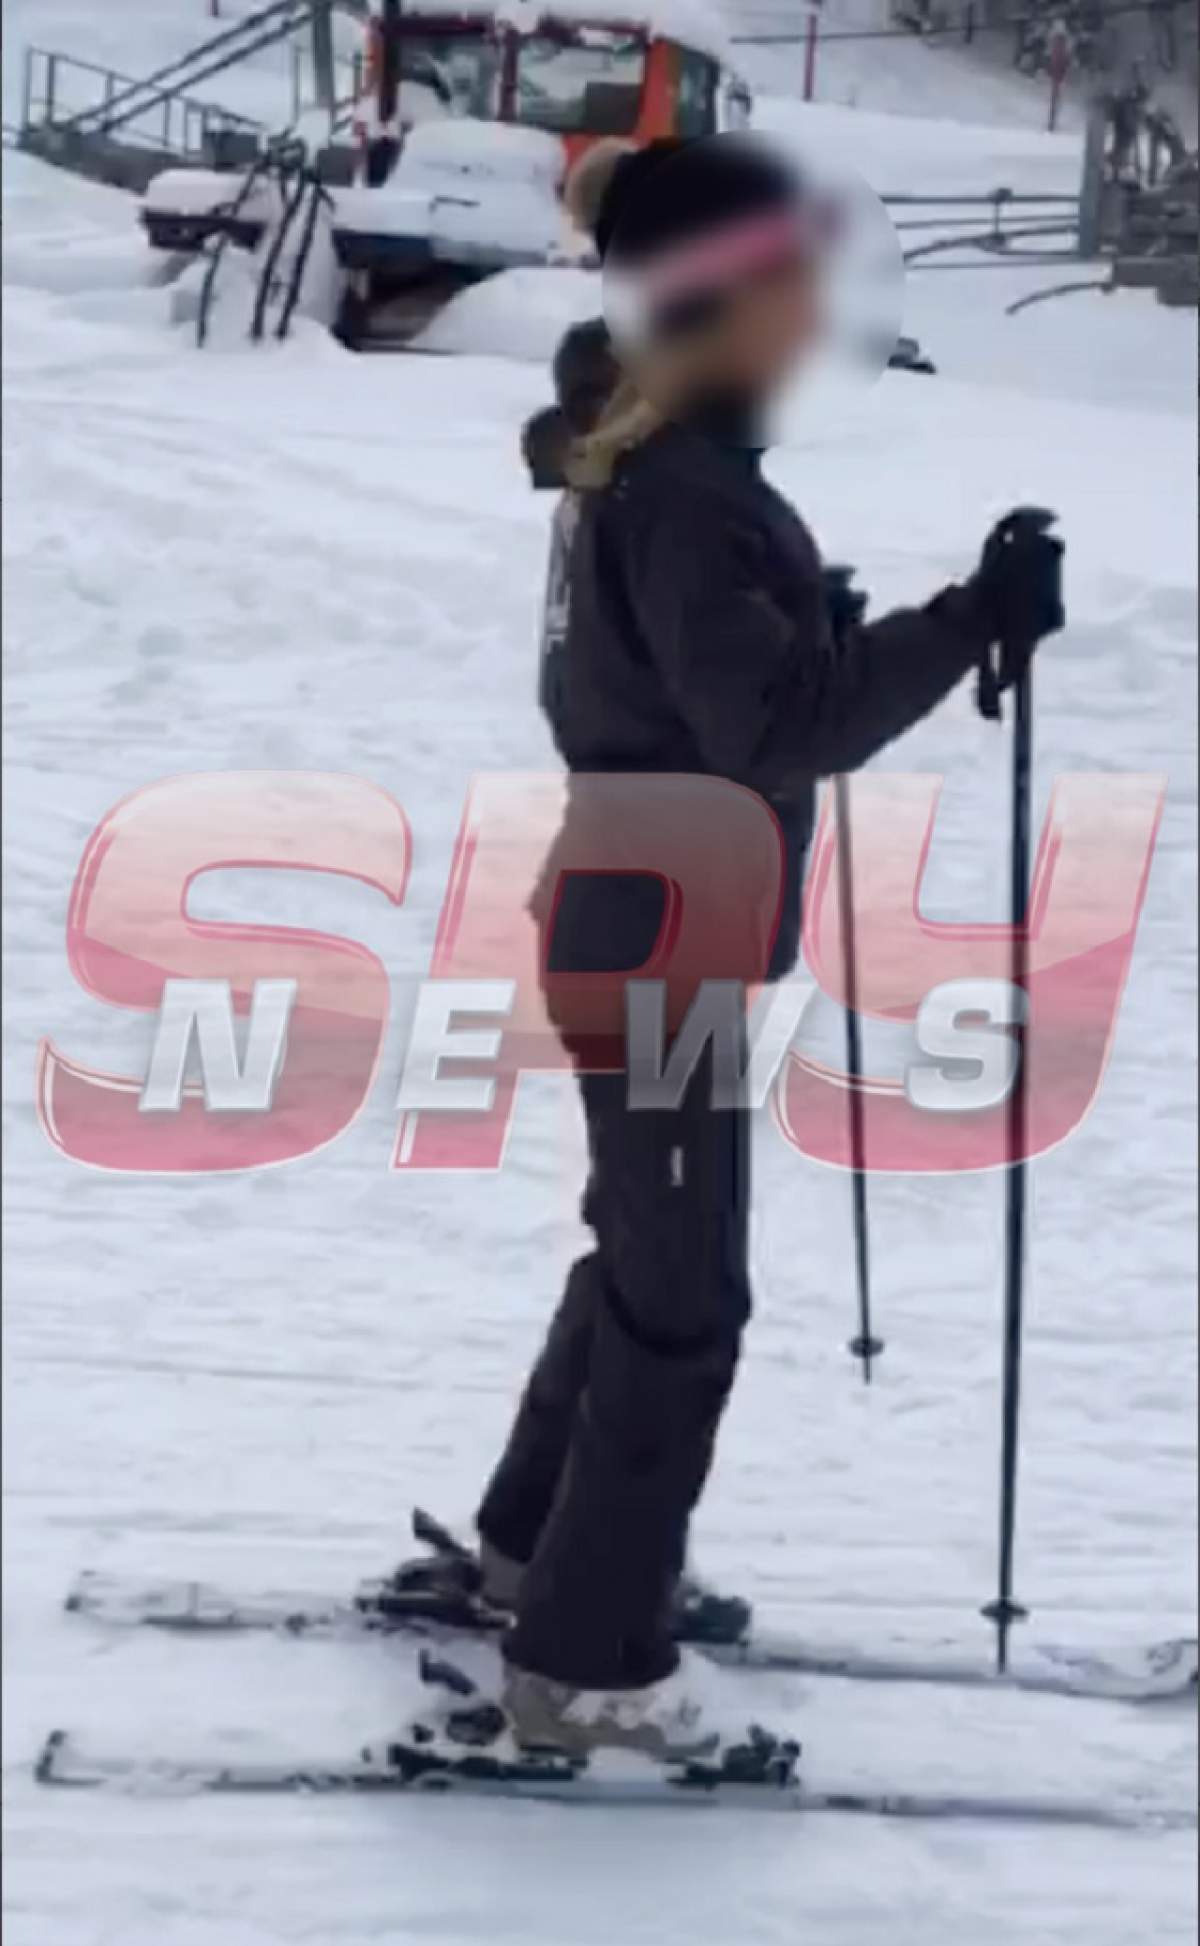 Ce vedetă se află în spatele costumului de schi? Indiciu: este una dintre cele mai sexy femei de la noi!